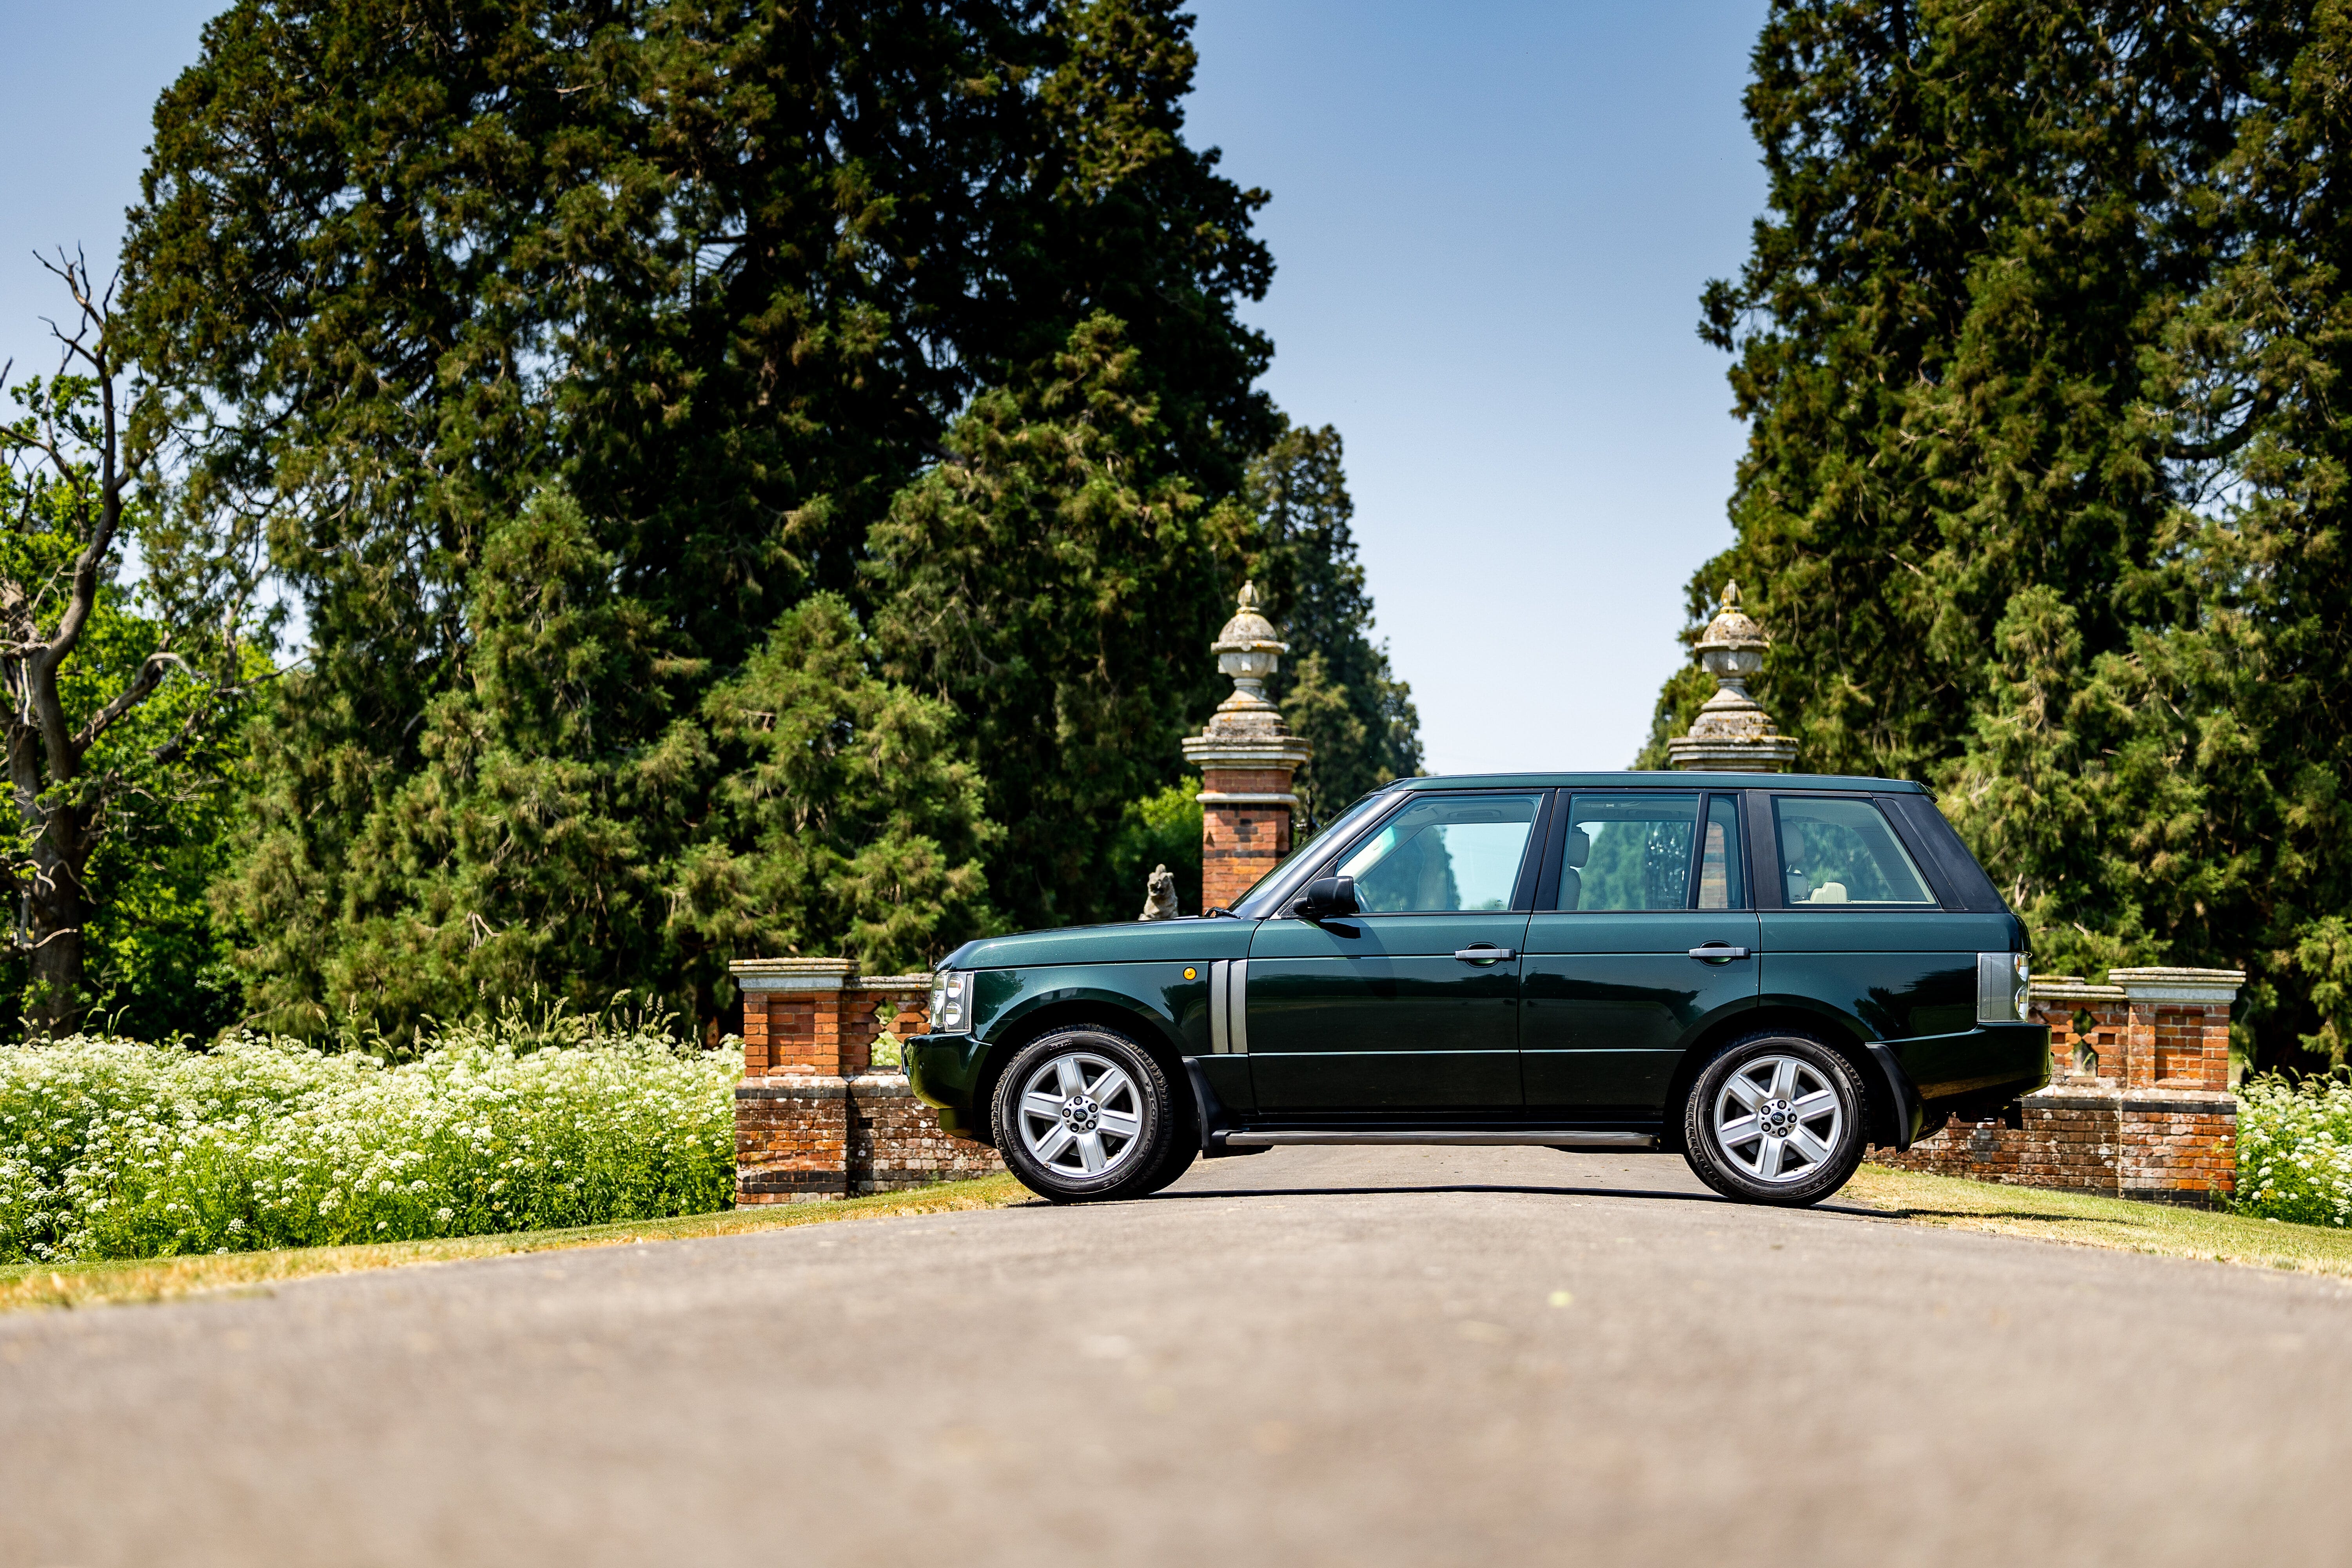 2004 Range Rover, kürzlich versteigert.